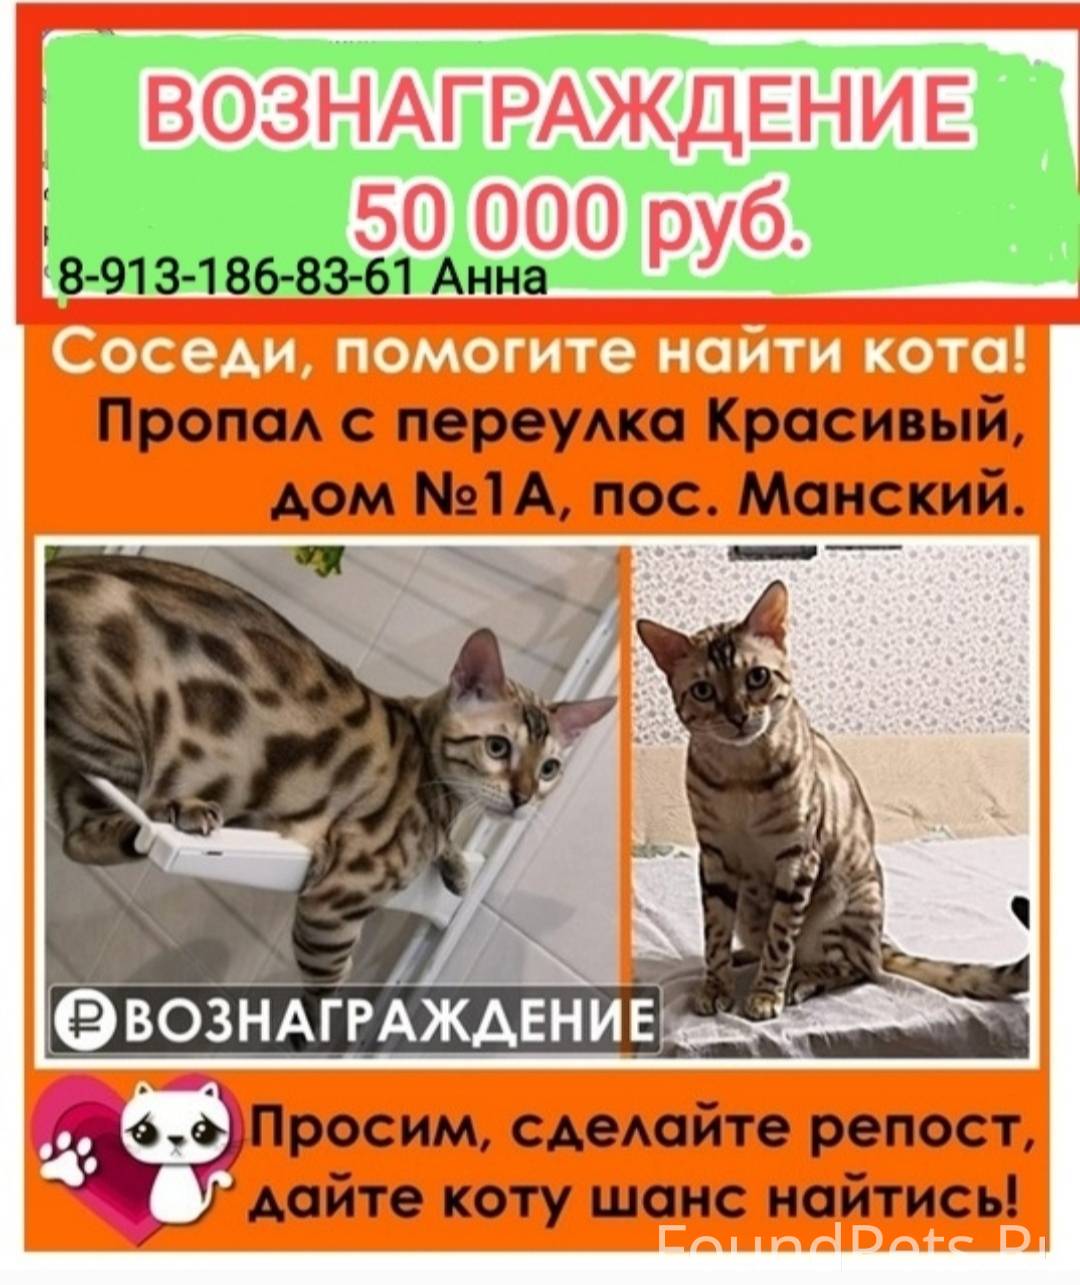 Потерялся кот в посёлке Манский, Красноярского края 13.06.2022г. Верните за вознаграждение. 50 000 руб